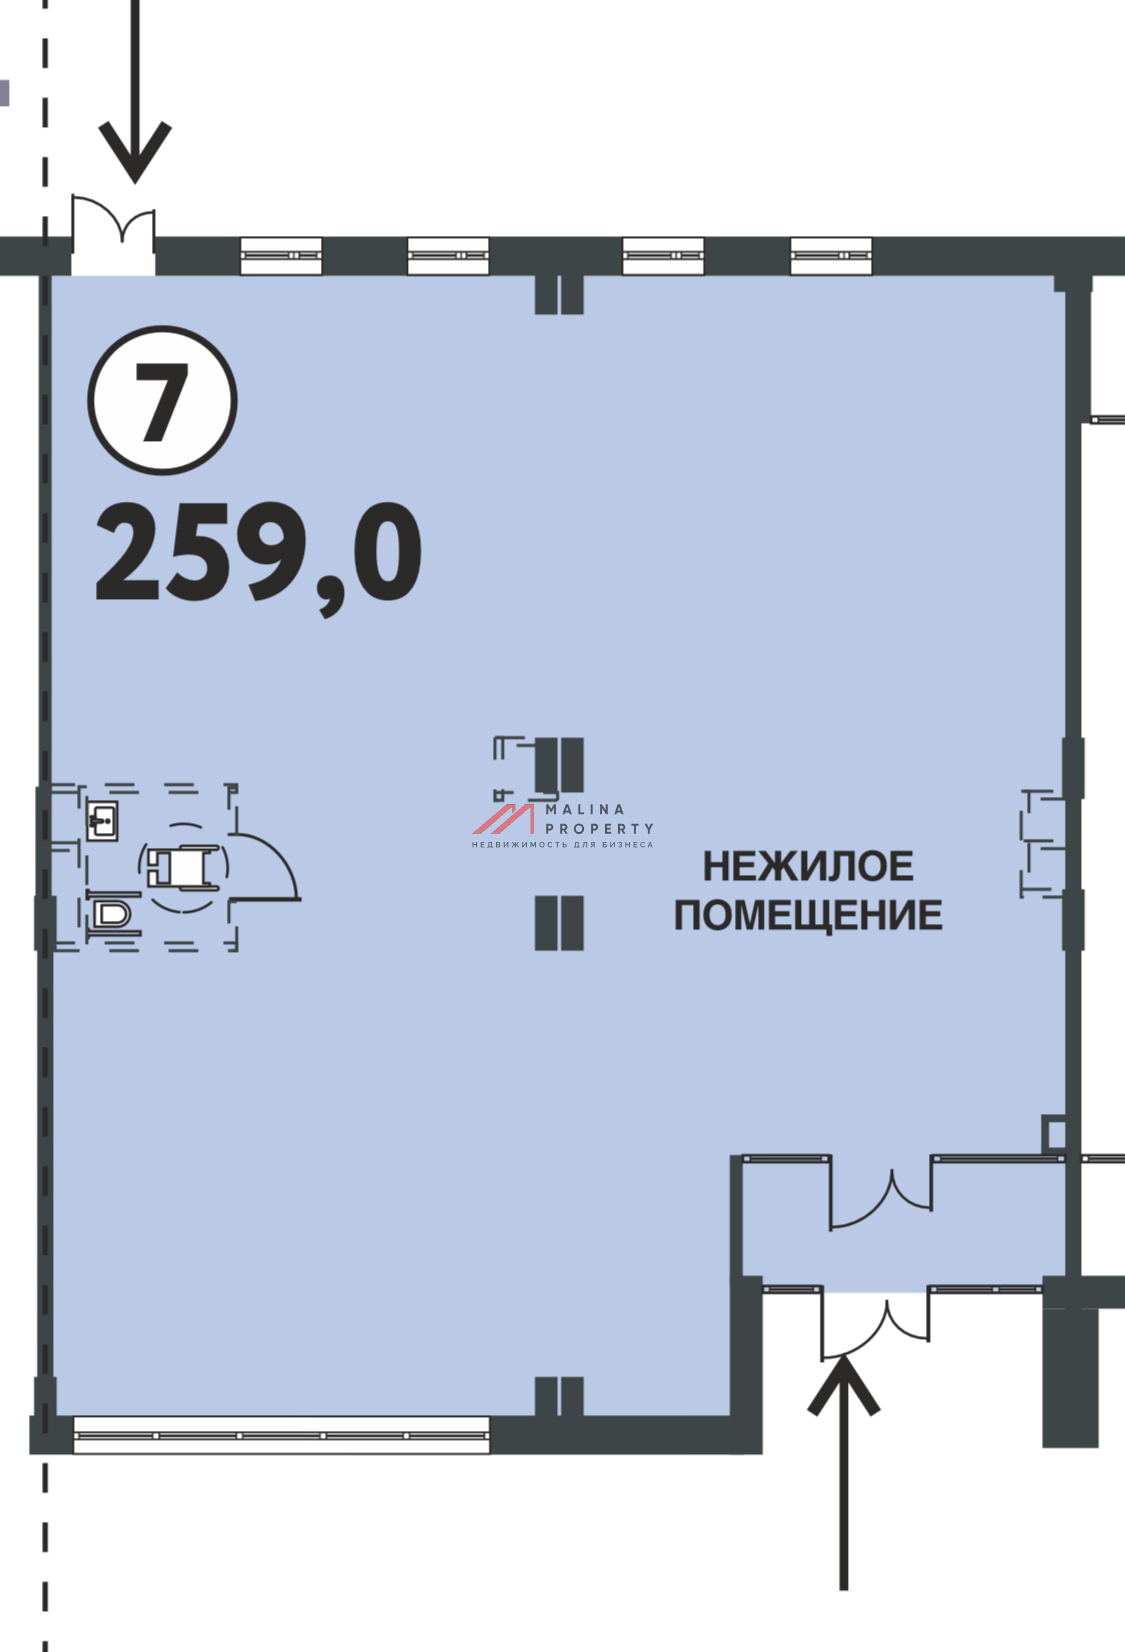 Продажа помещения на Павелецкой набережной